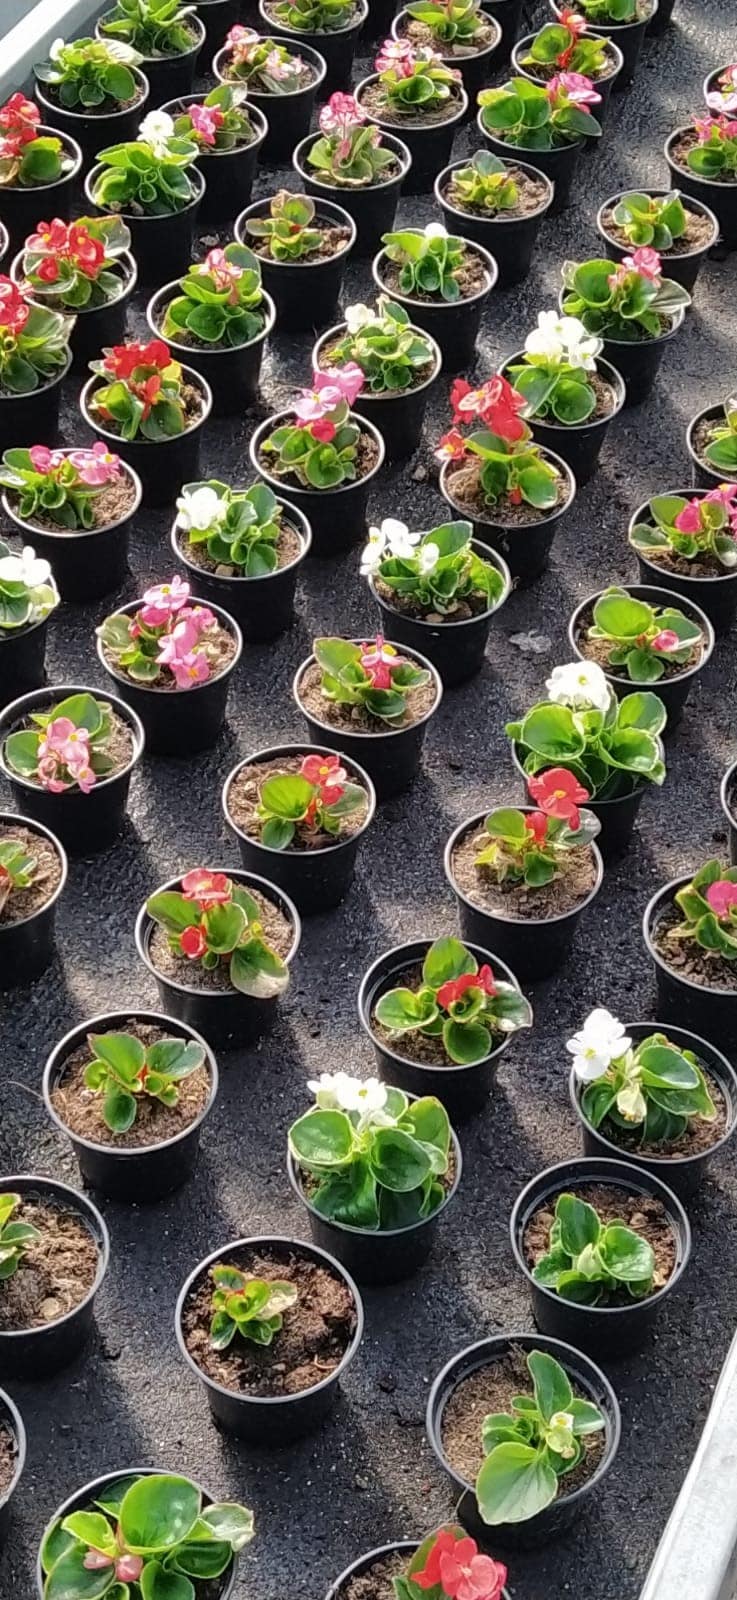 Come da tradizione, all'Istituto Agrario Serpieri riparte la vendita delle piante da fiore!